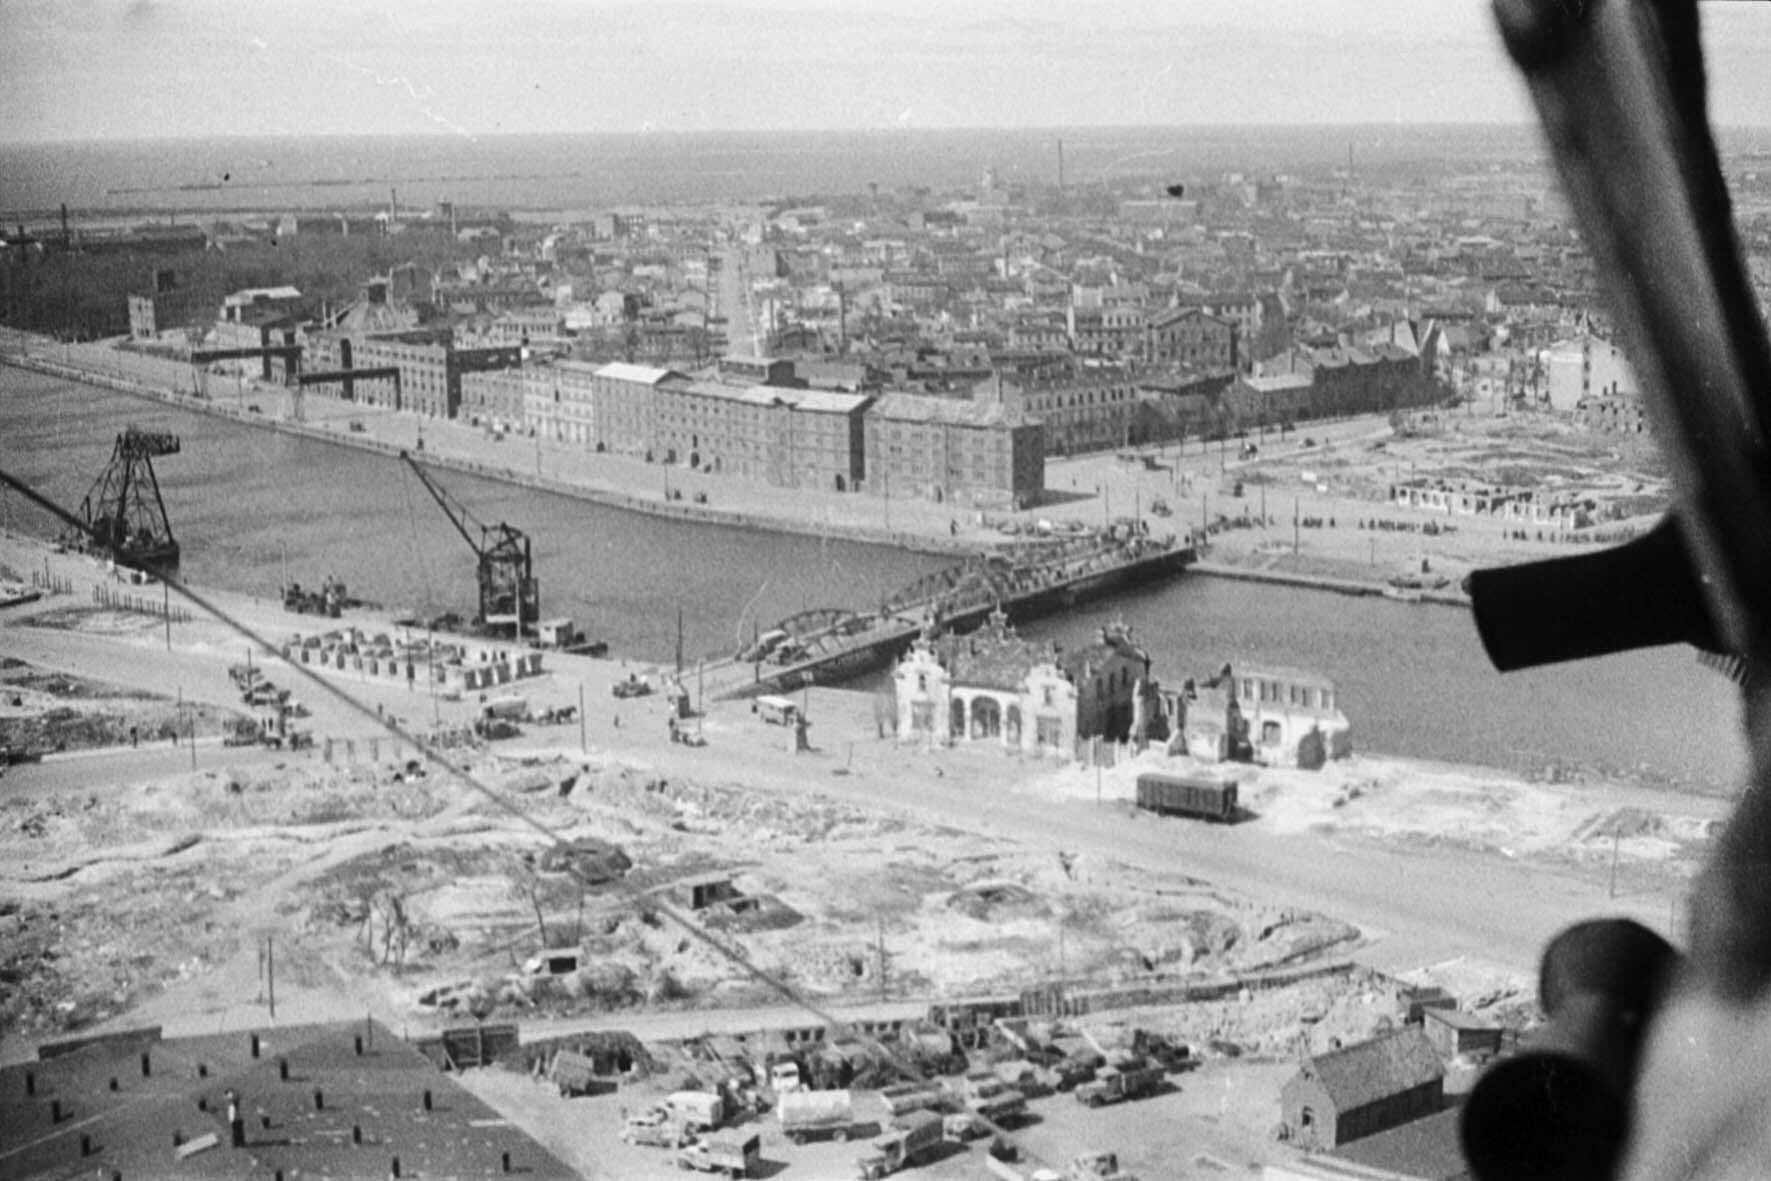 Luftaufnahme vom Hafen der Stadt Libau, Kurland/Lettland, 9. Mai 1945 (Museum Berlin-Karlshorst RR-P)